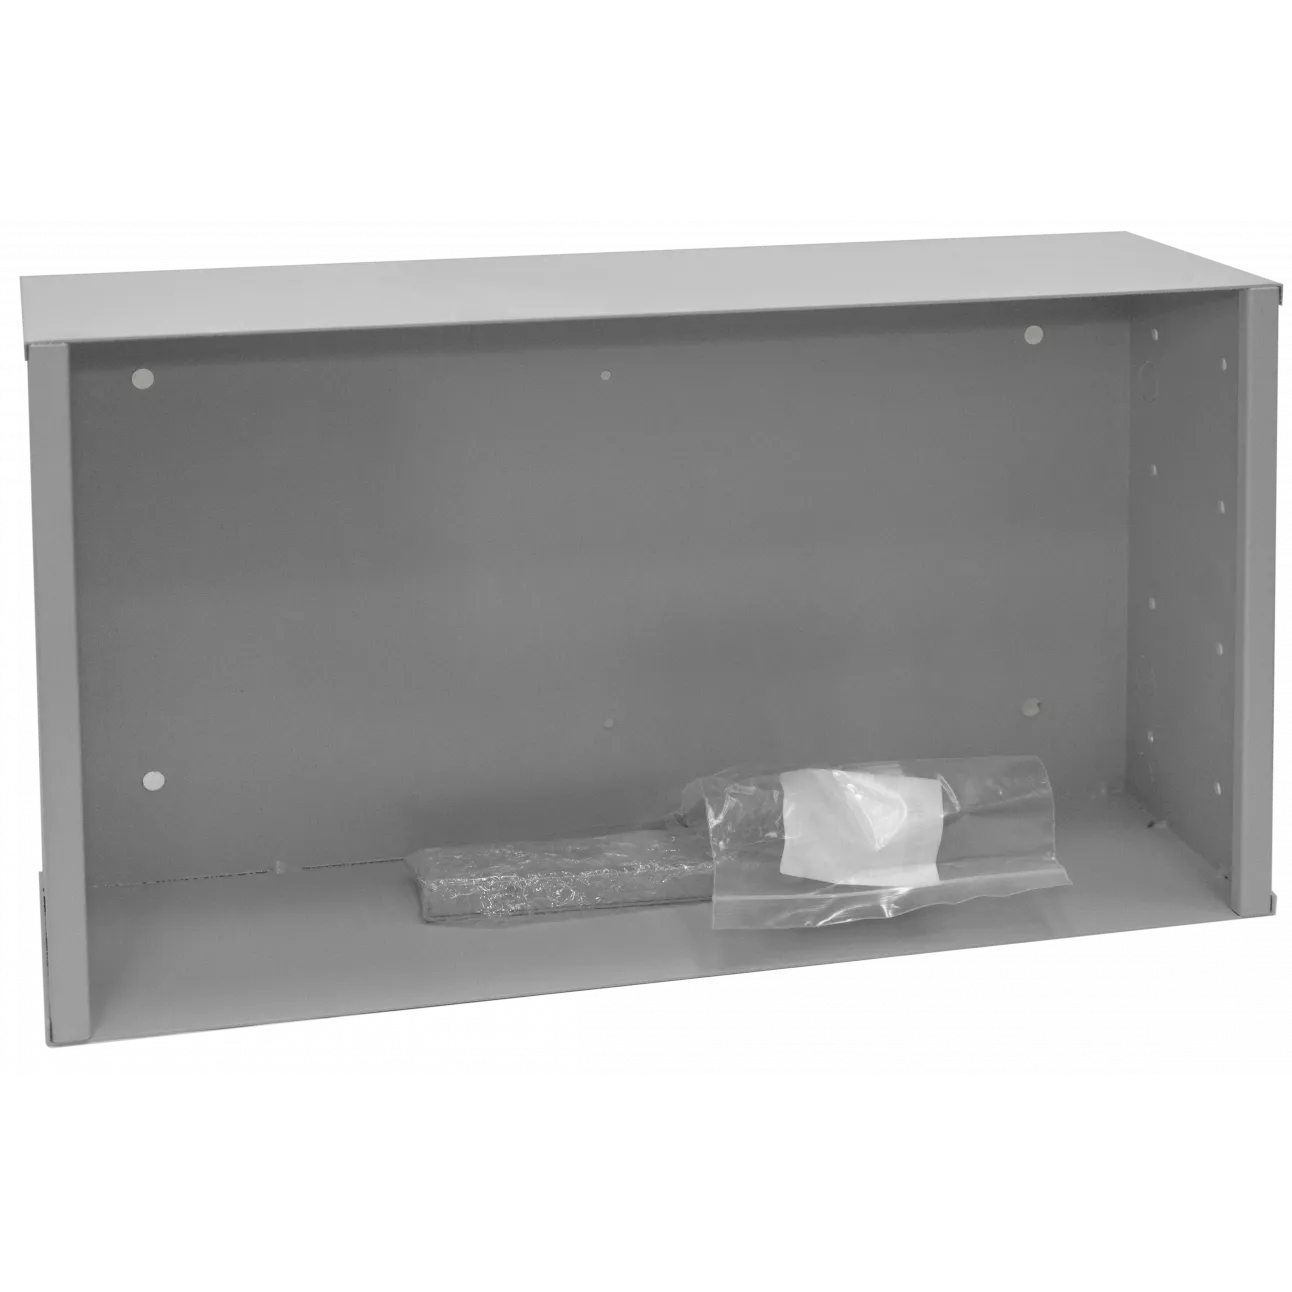 Антивандальный шкаф, тип-пенальный высота 300мм, глубина 150 мм, ширина 530мм